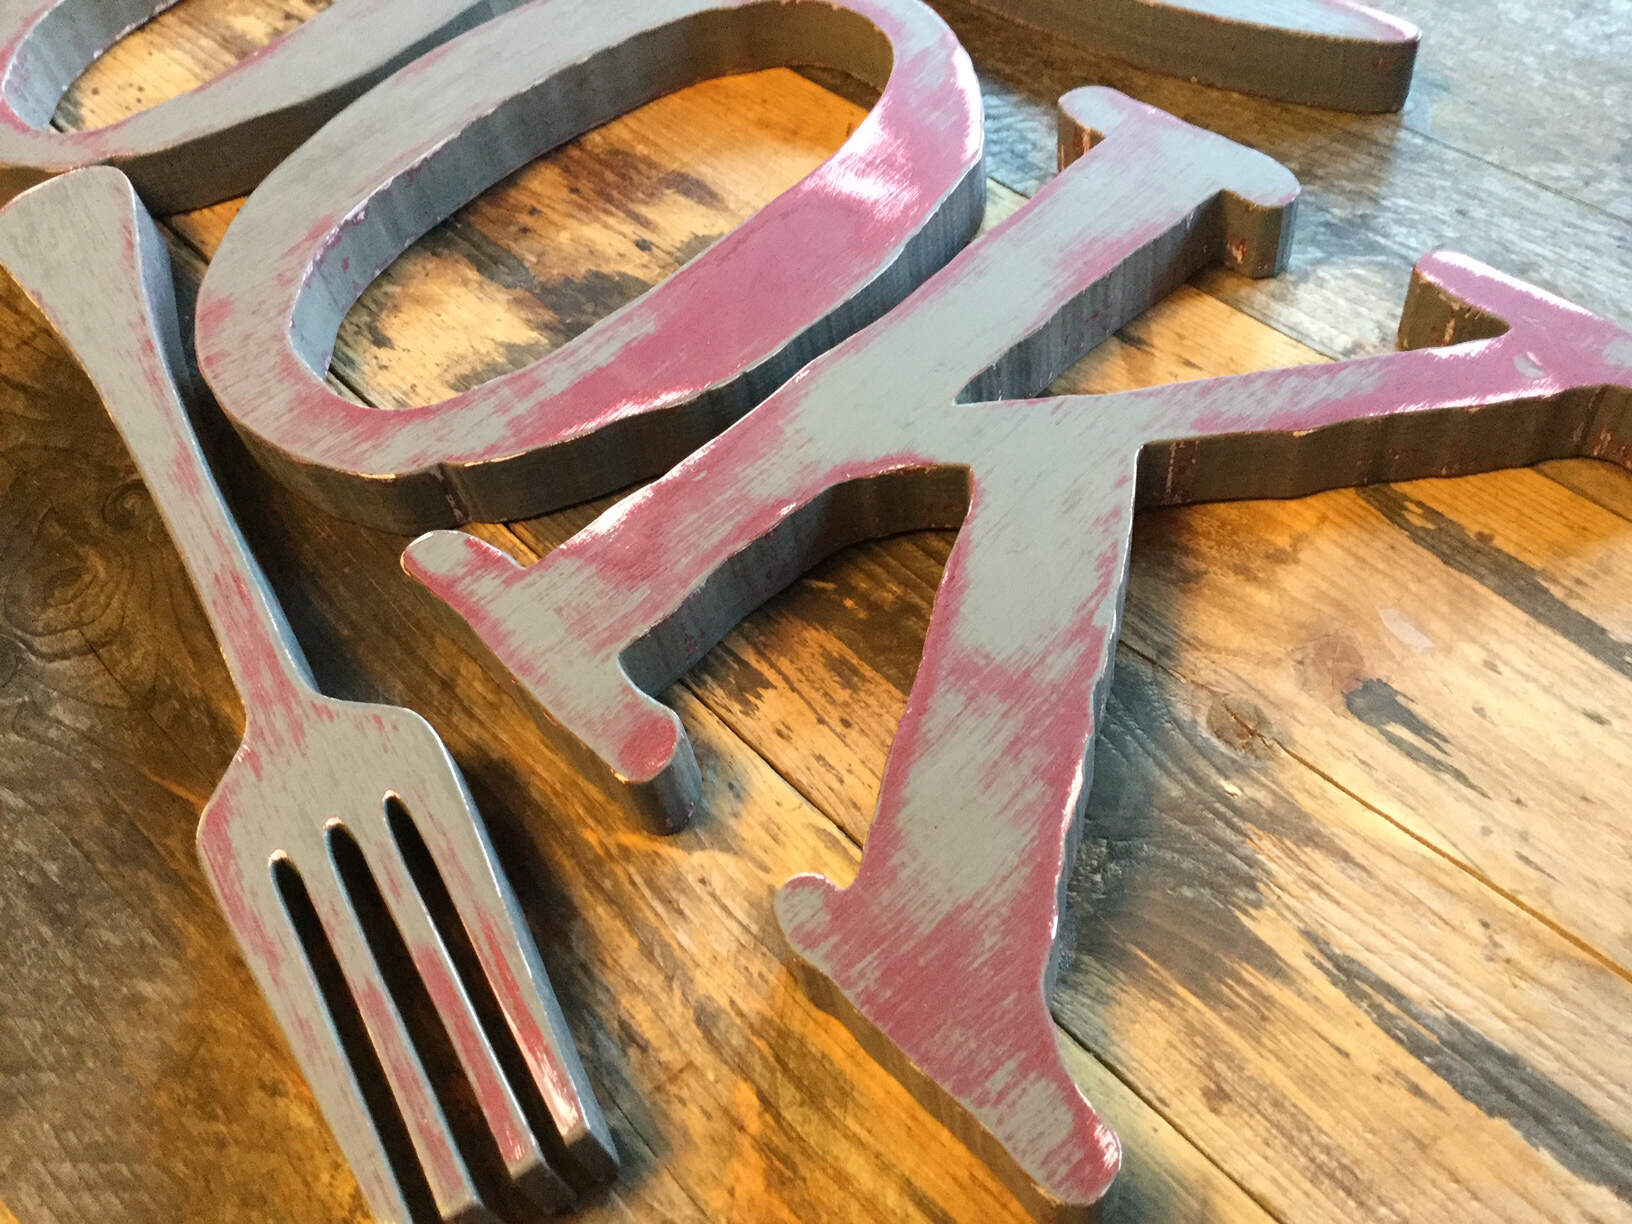 Refurbishing some older 3D letters